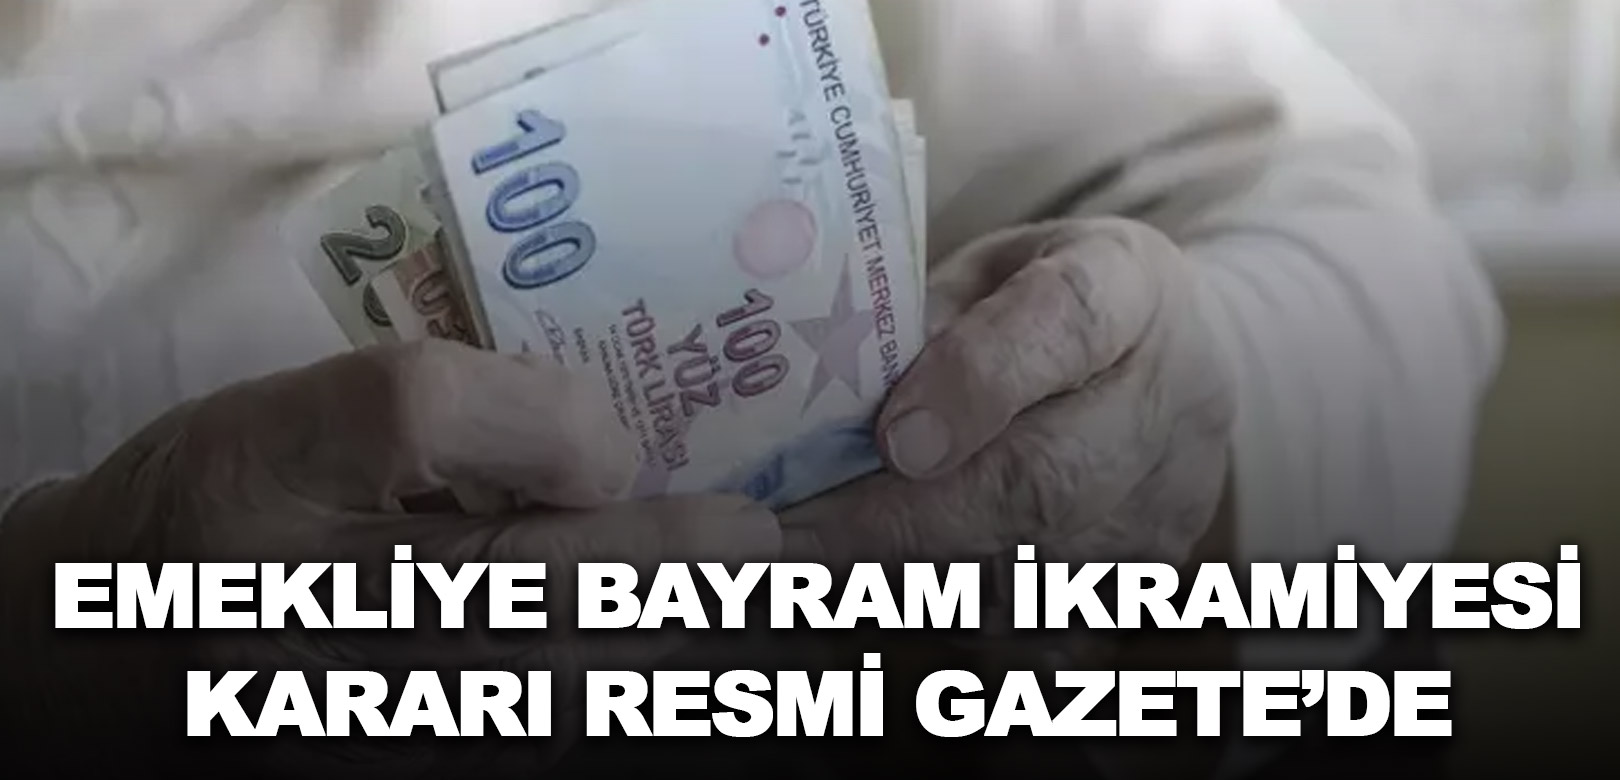 Emekli bayram ikramiyesinin 3 bin TL'ye çıkarılması kararı Resmi Gazete'de